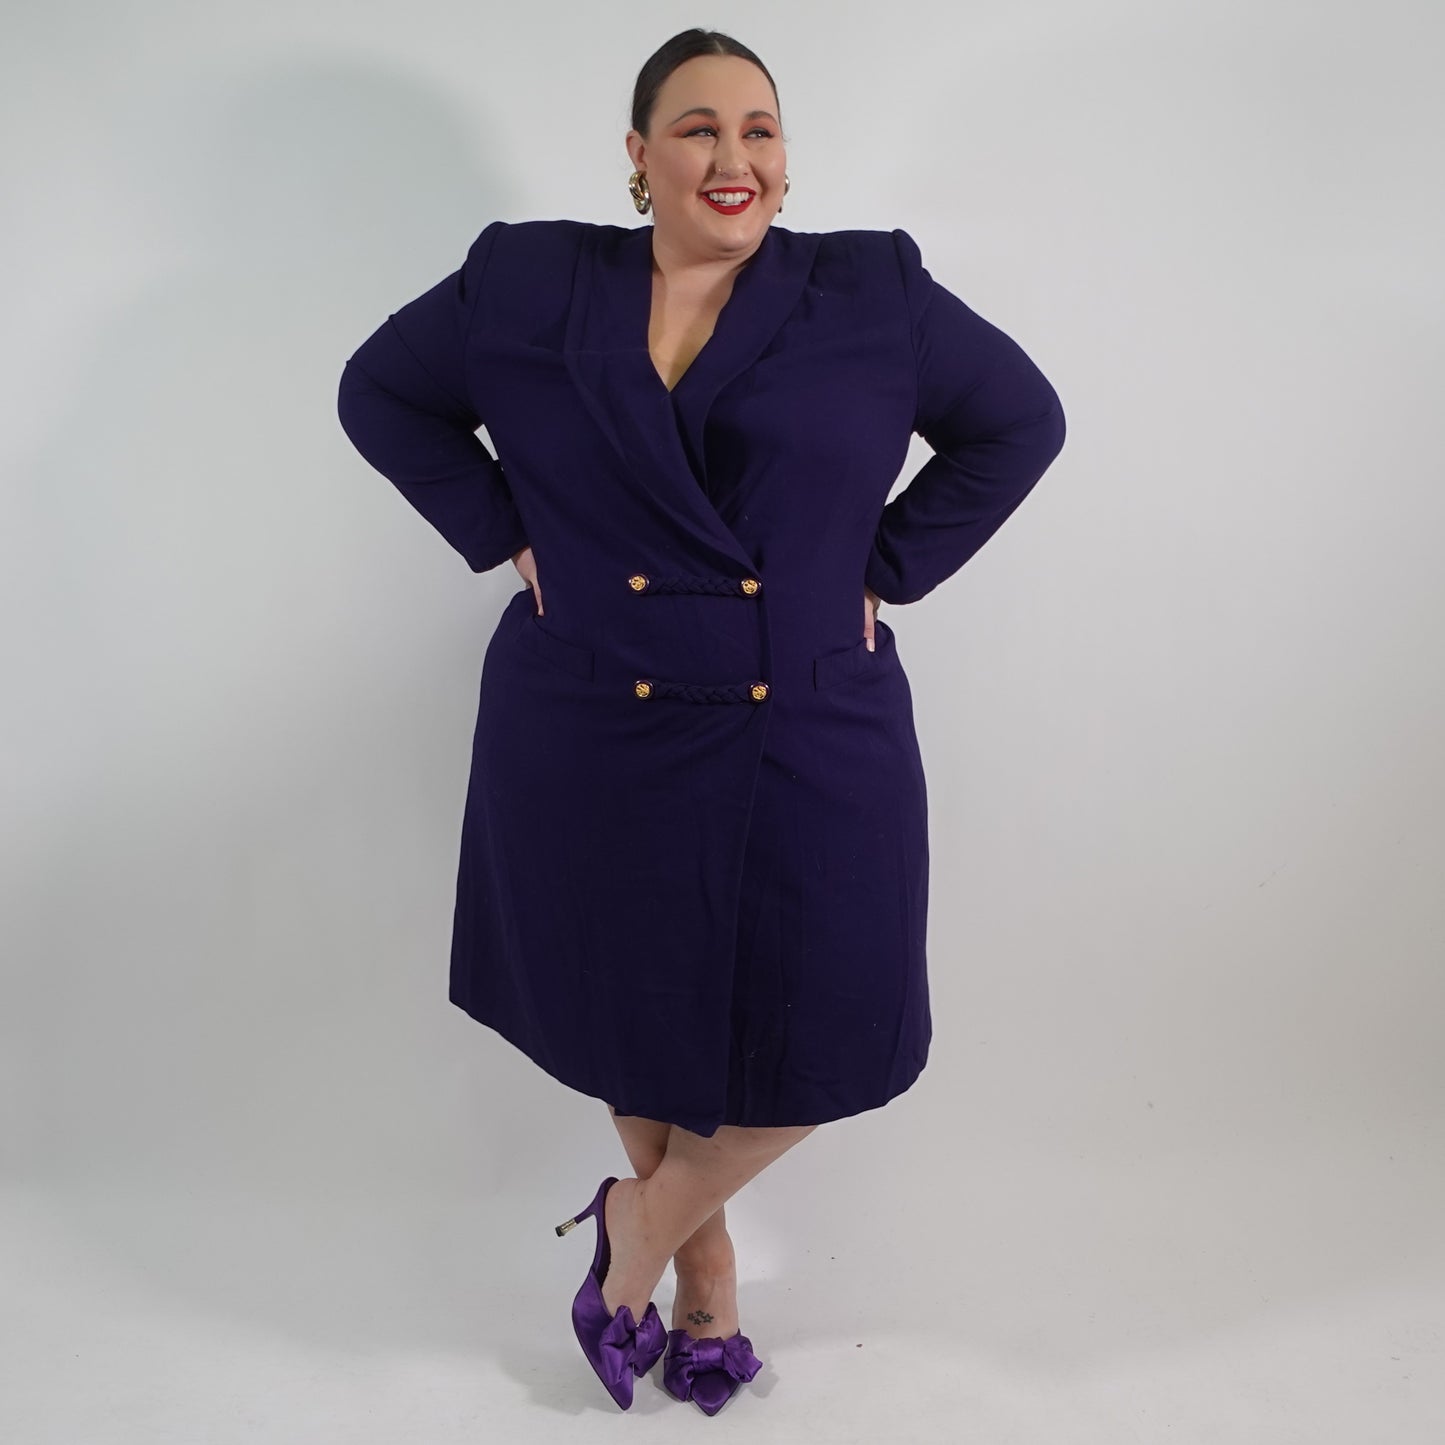 Vintage Kasper II Purple Knee Length Blazer Style Wrap Dress